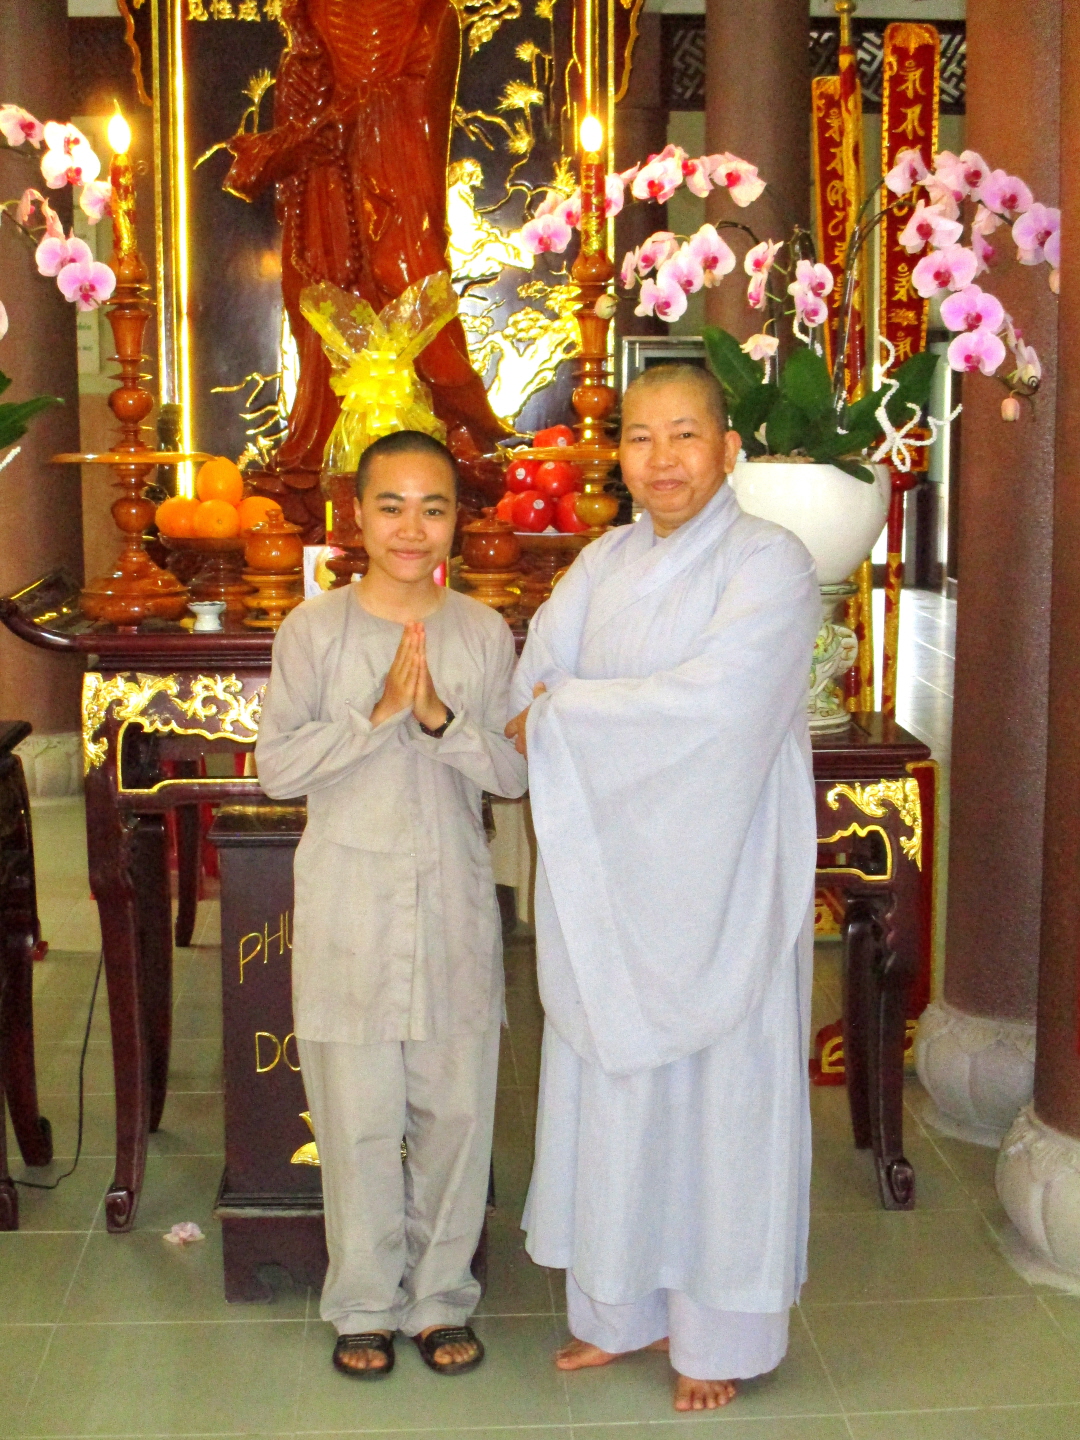 Chua Long Tho Buddhist Nunnery, Hoi An